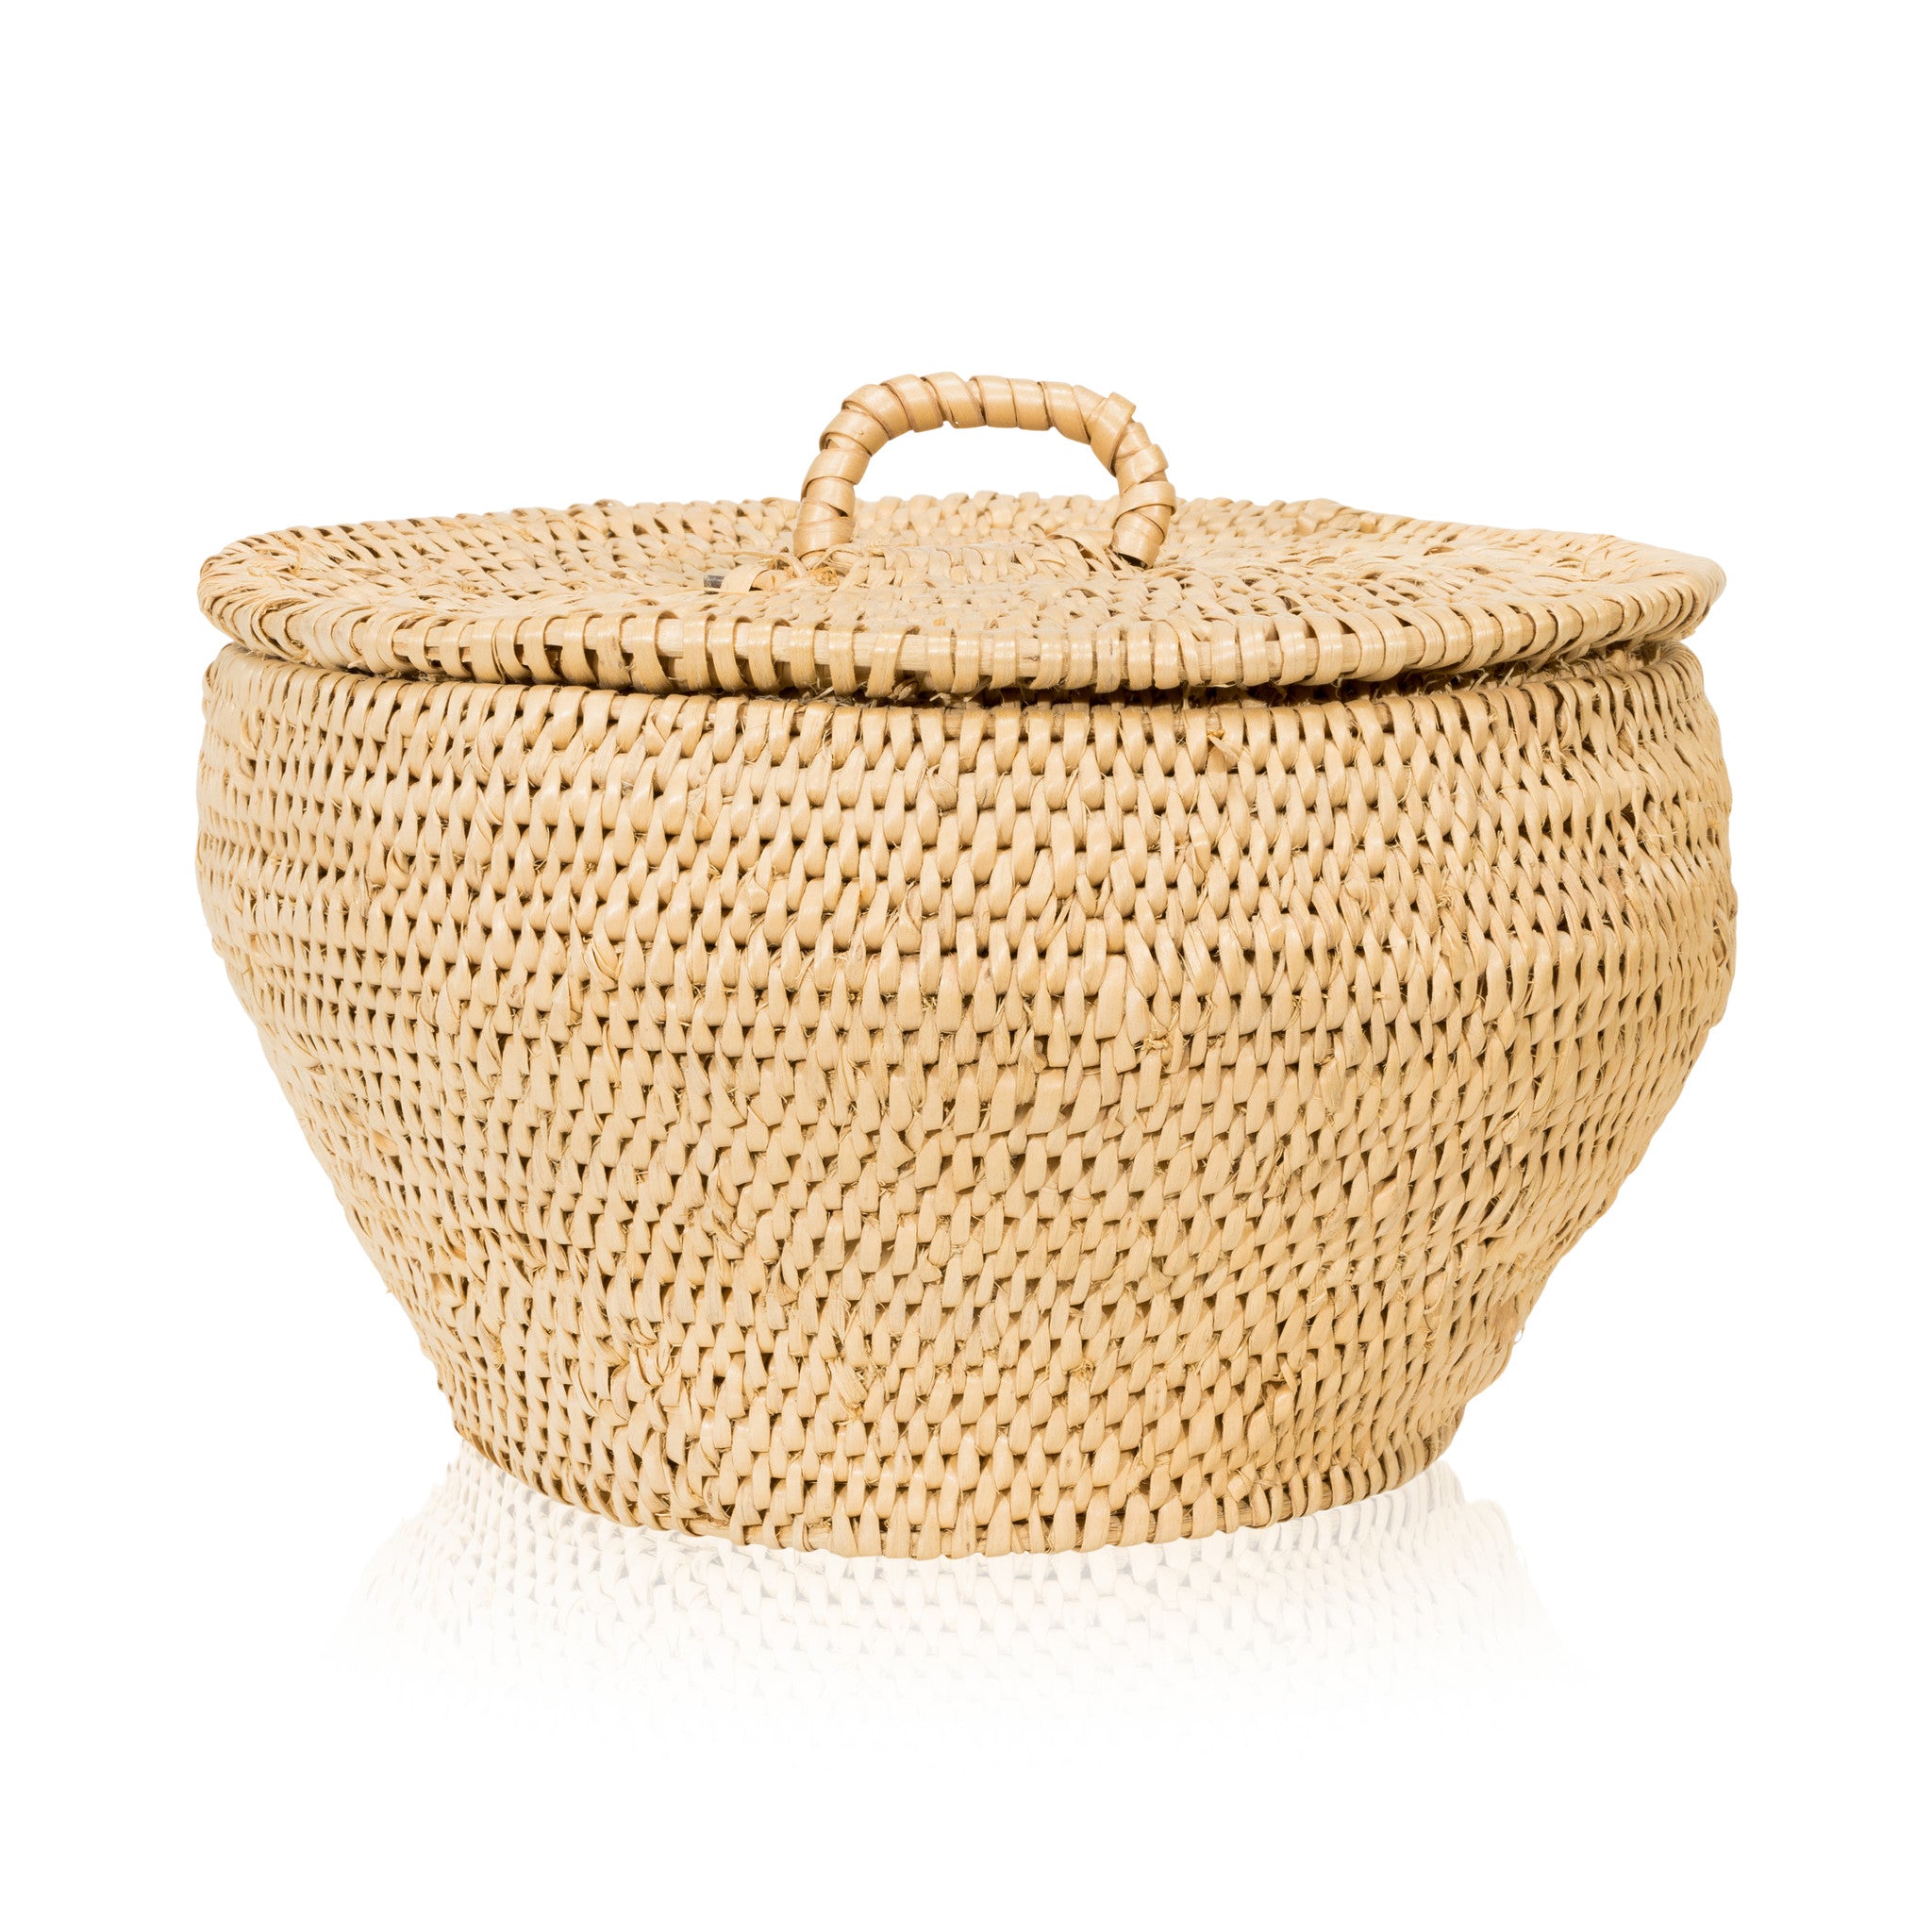 Shoshone/Bannock Lidded Basket, Native, Basketry, Vertical